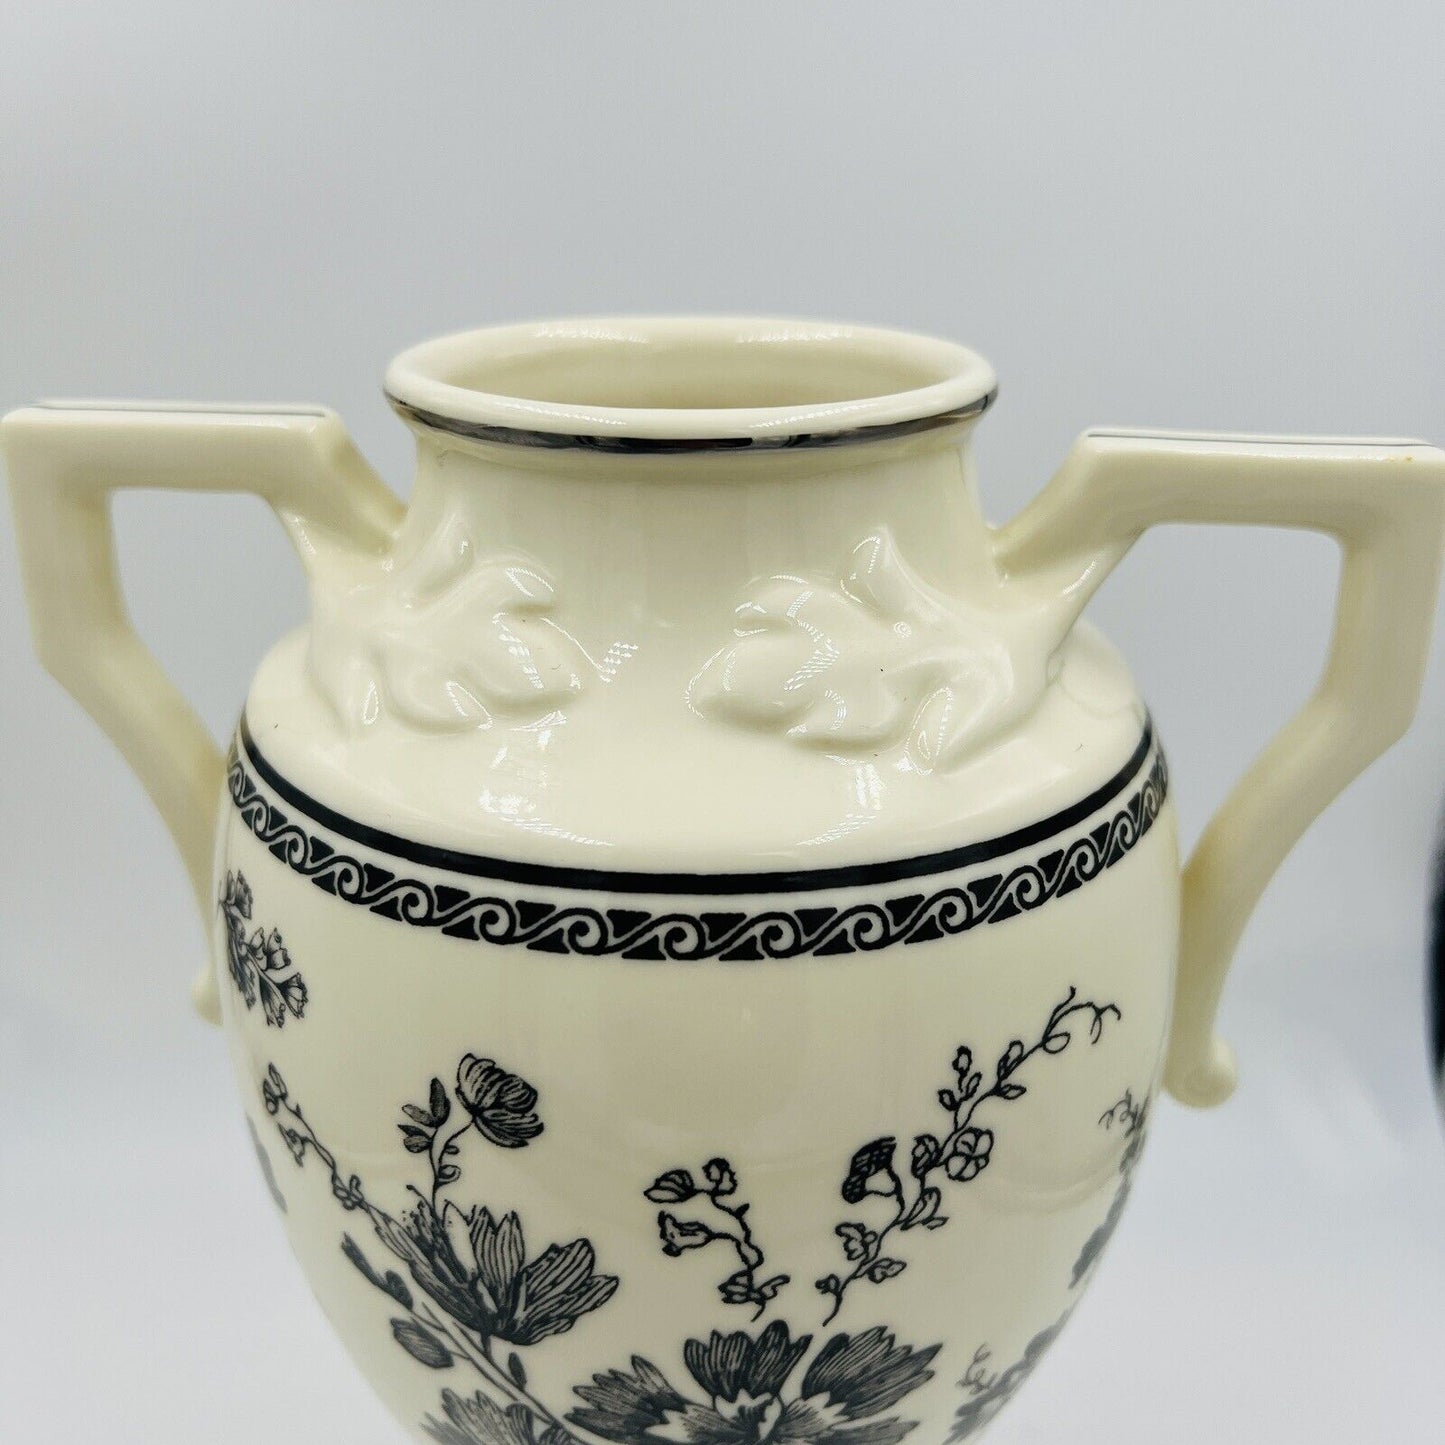 Lenox Urn Vase Porcelain 2002 Floral Elegance Handles Large Home Decor 9in